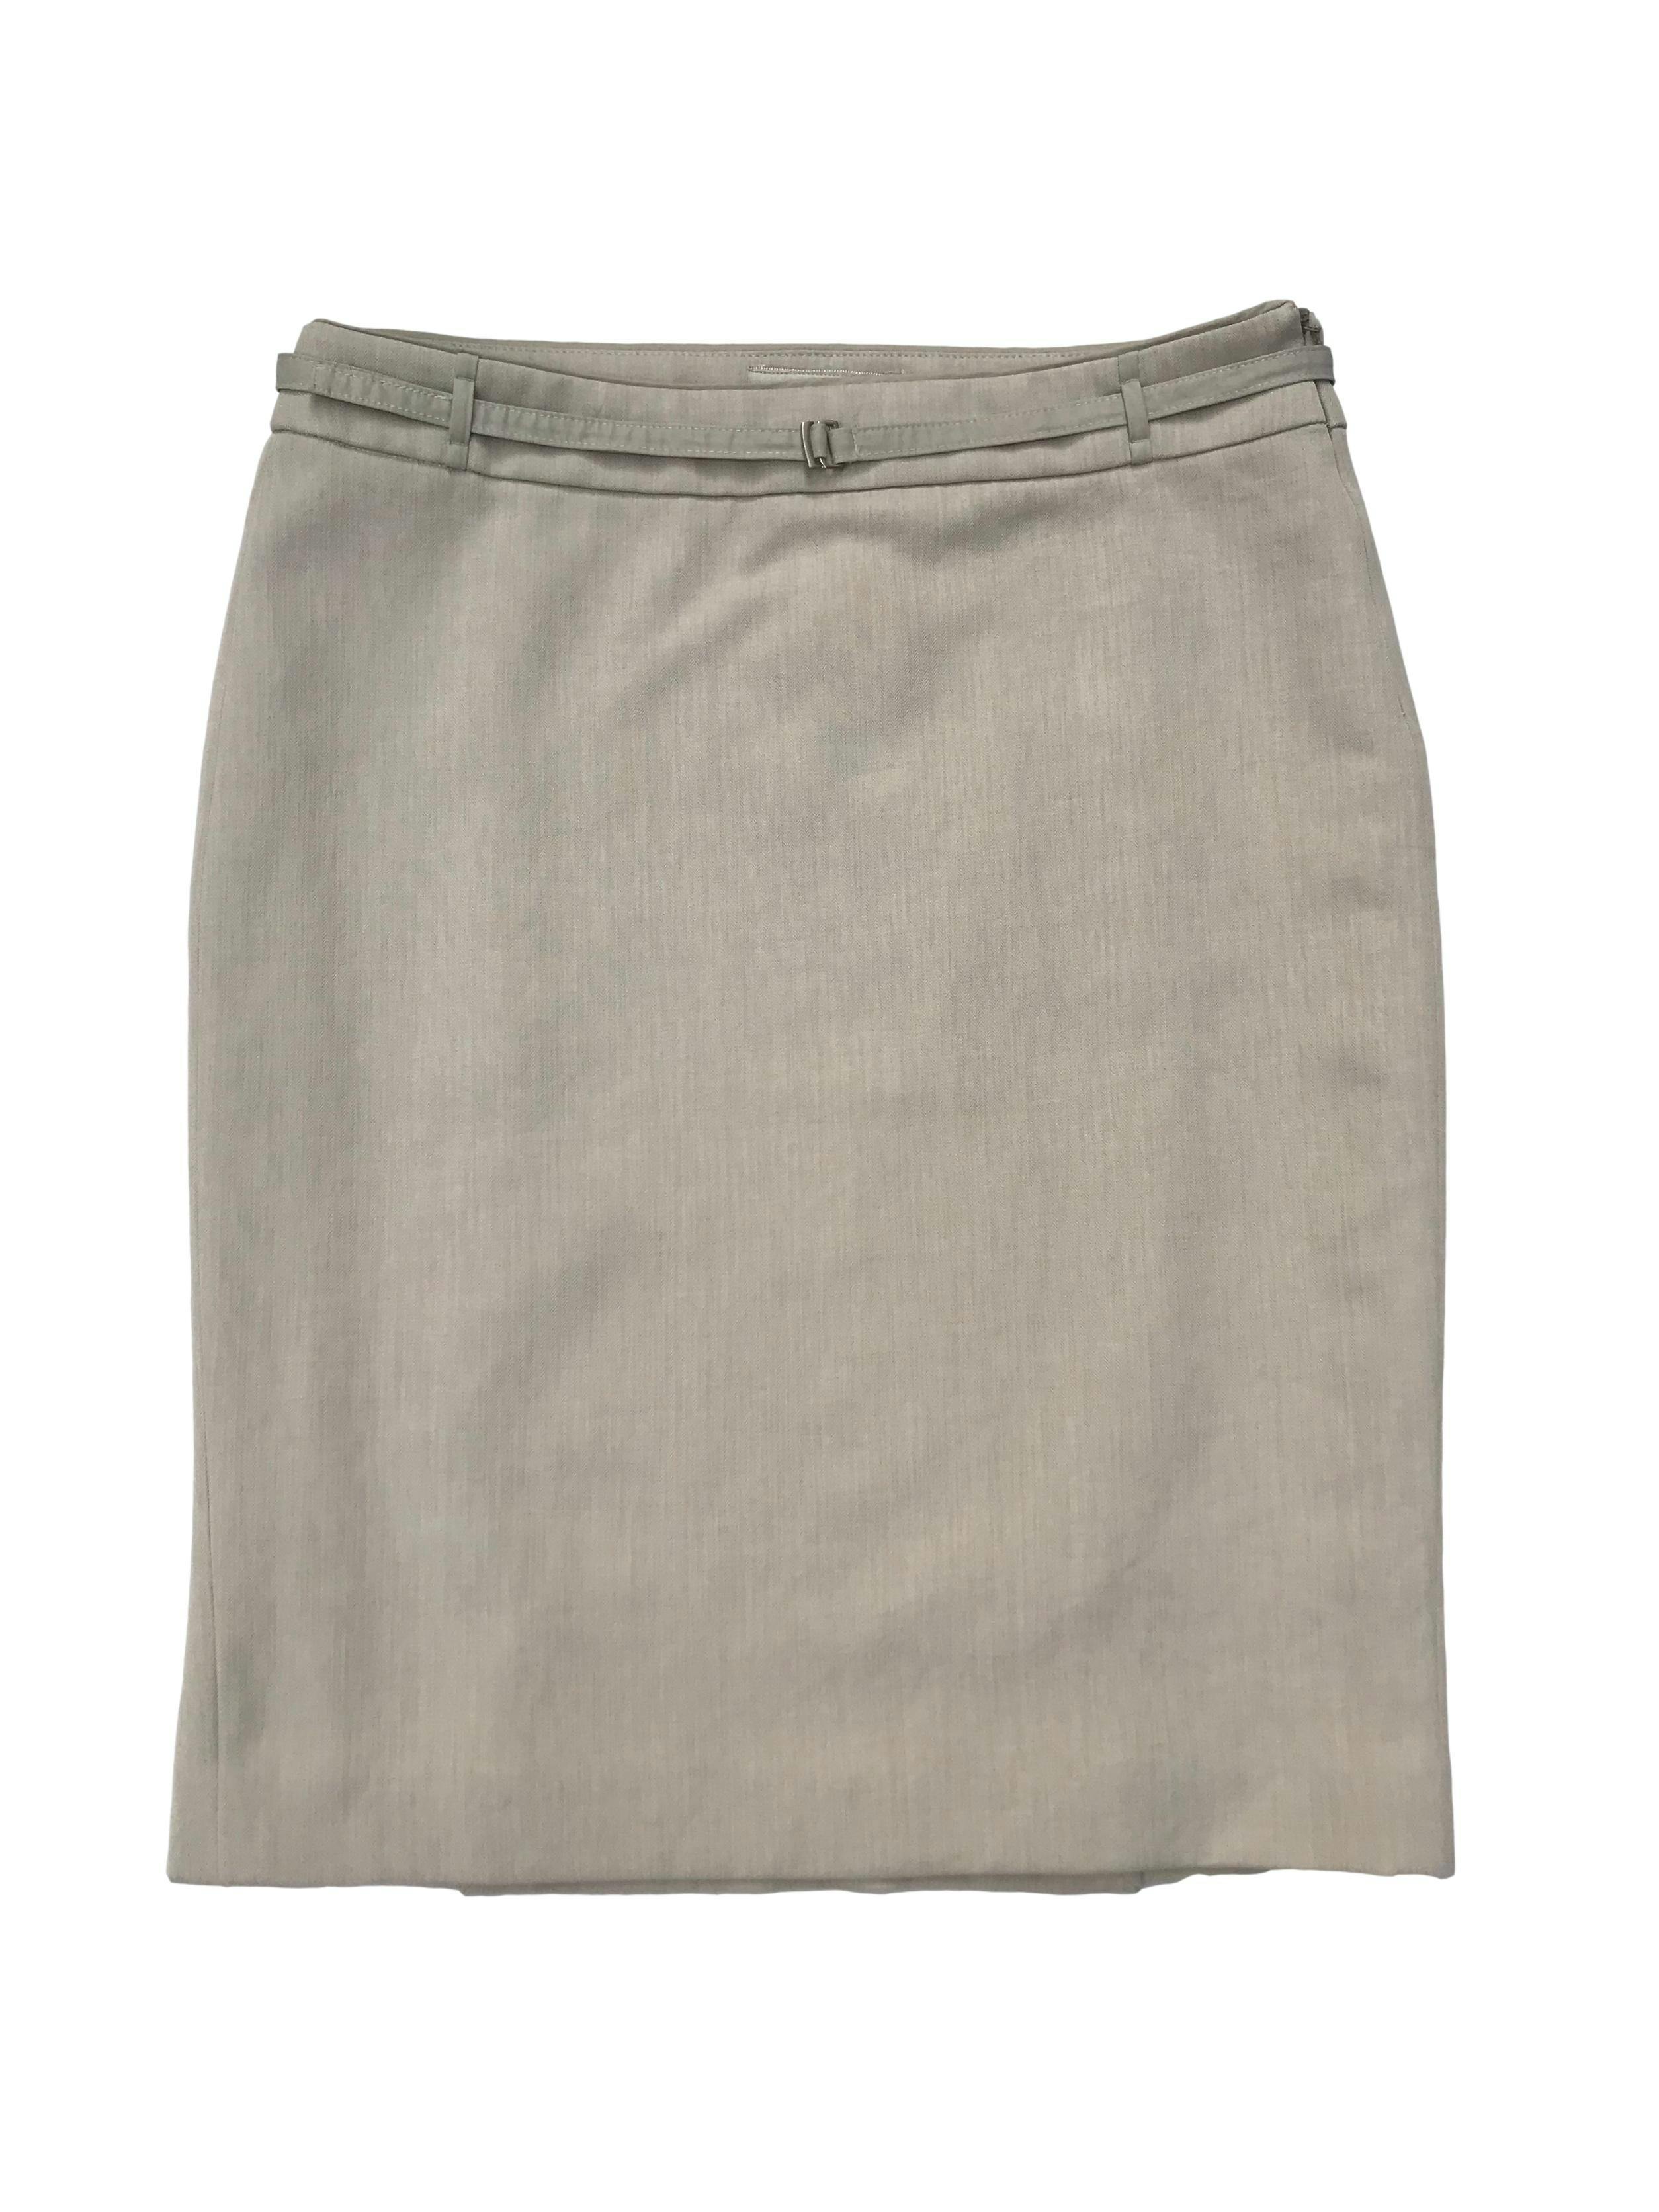 Falda formal Mango en tono crema, forrada, con cierre lateral y correita. Cintura 78cm Cadera 96cm Largo 55cm